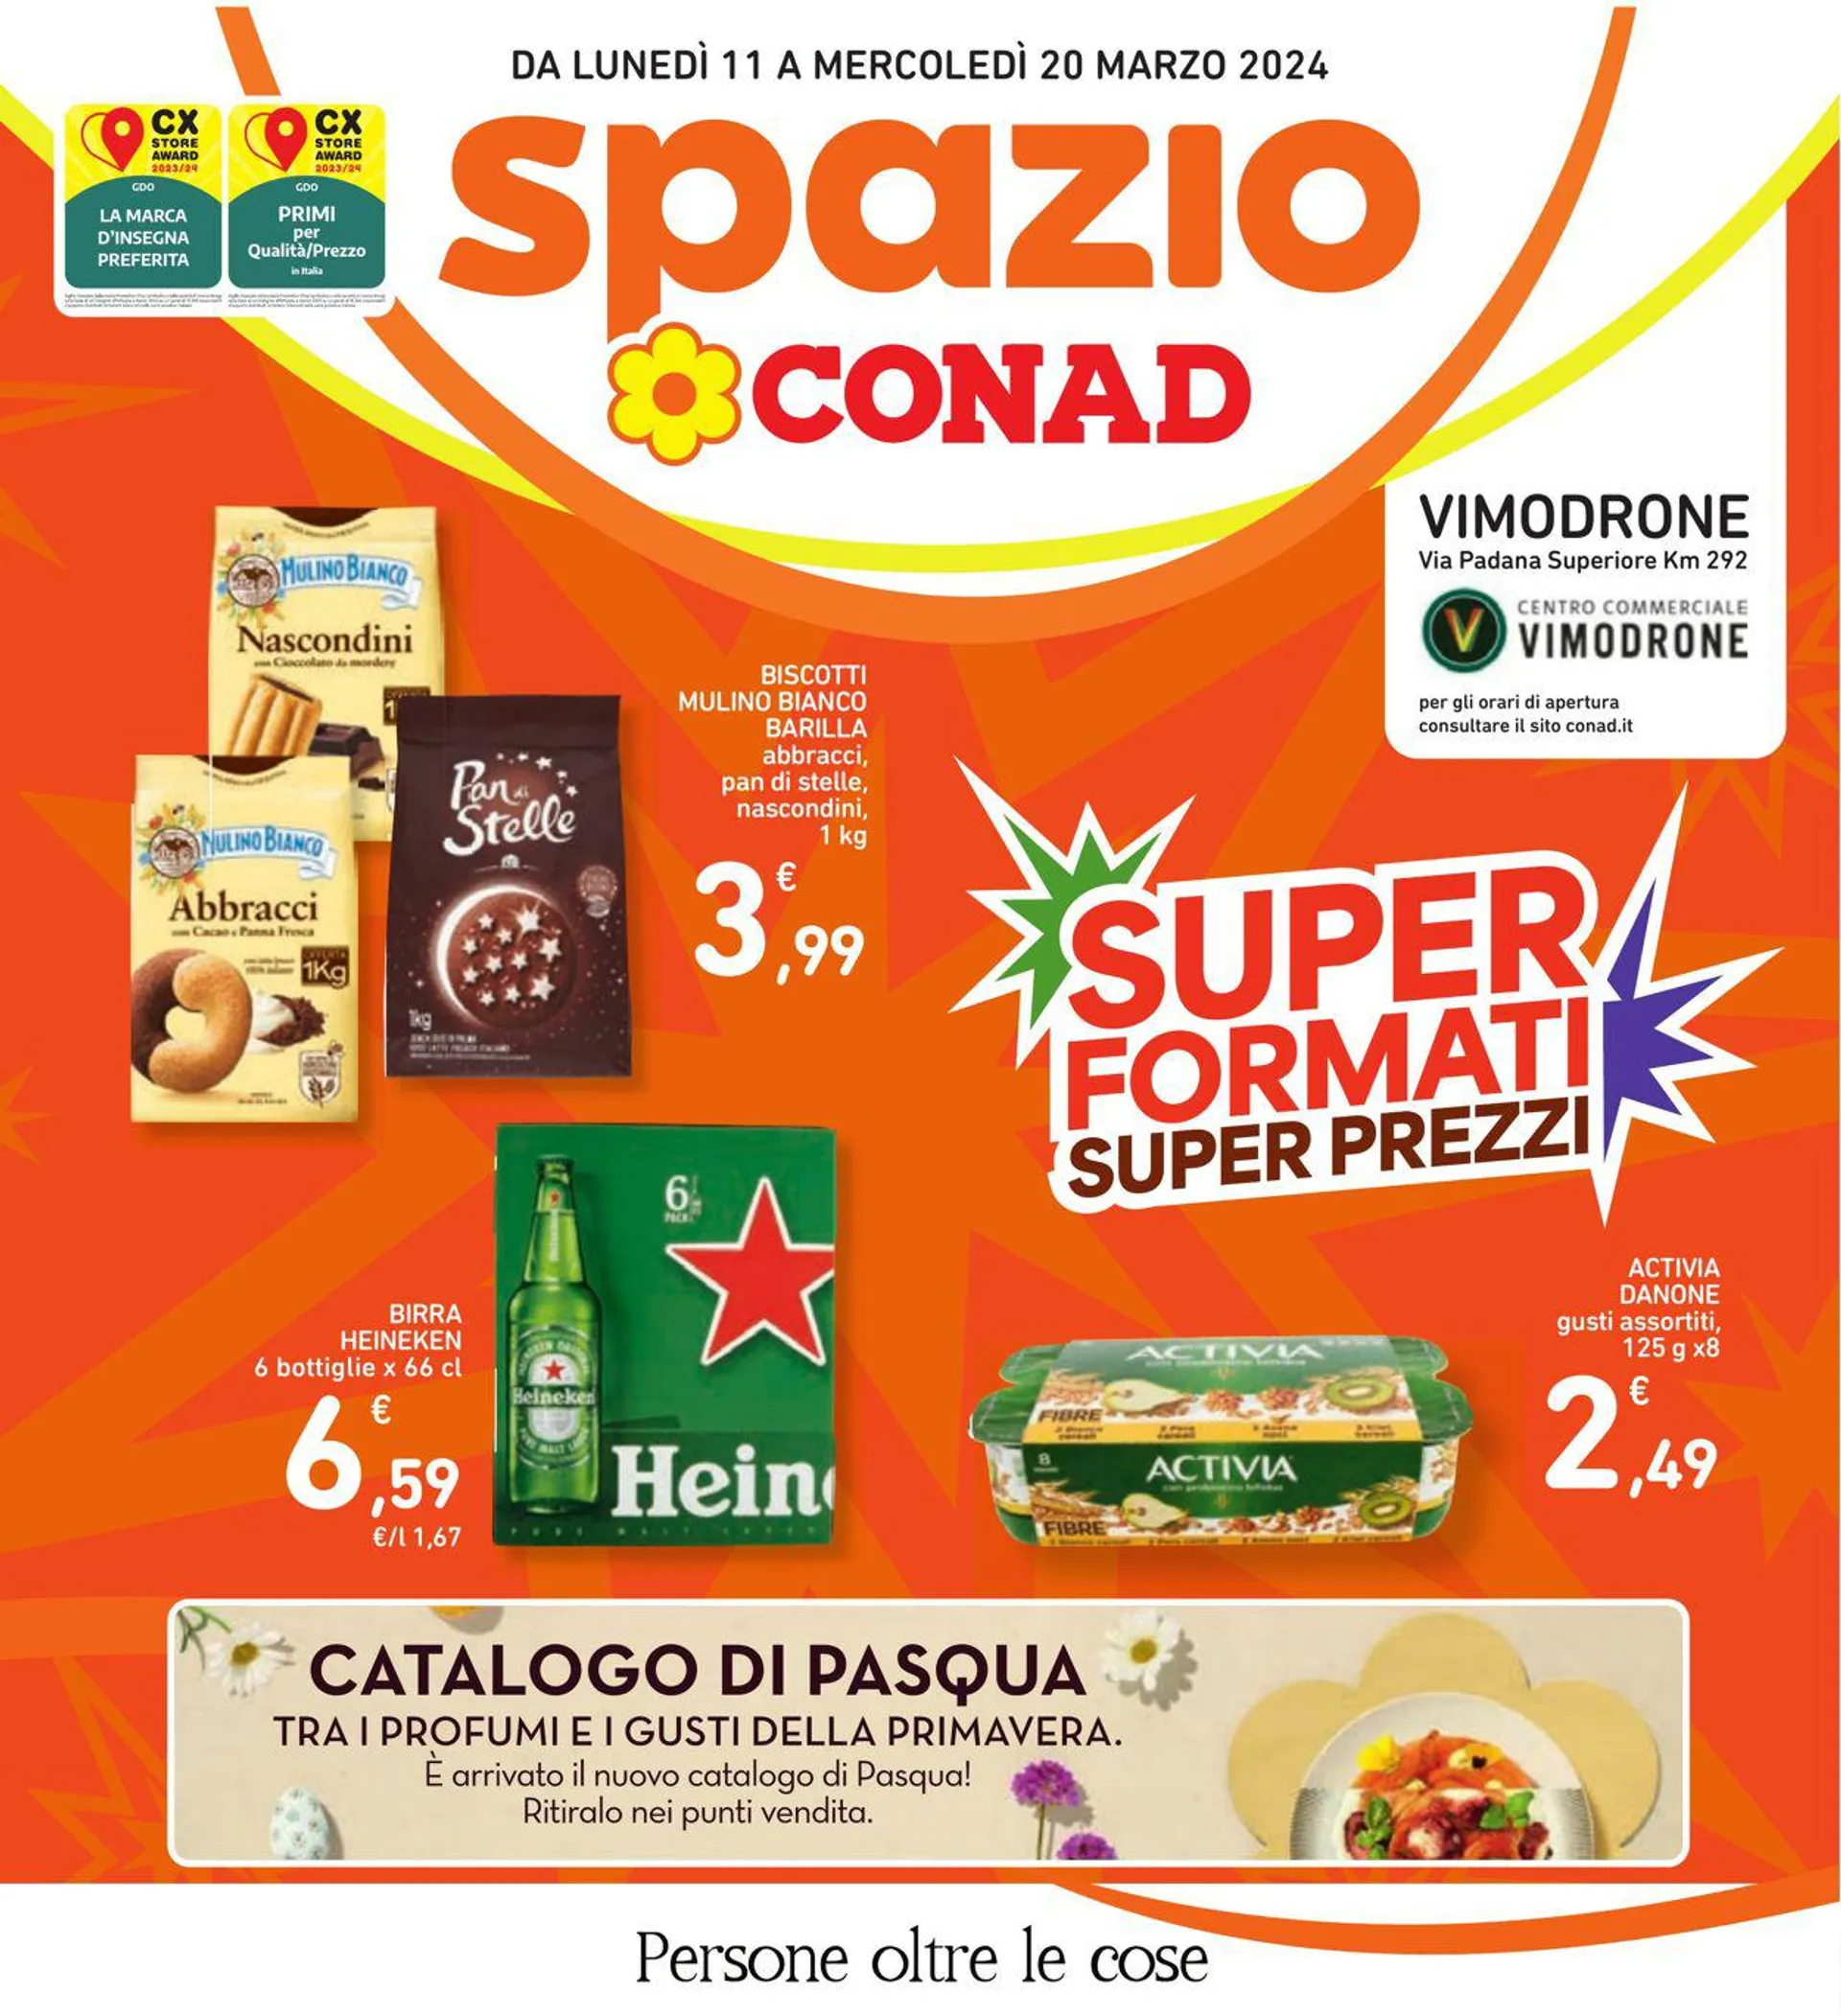 Conad - Spazio - Milano Volantino attuale